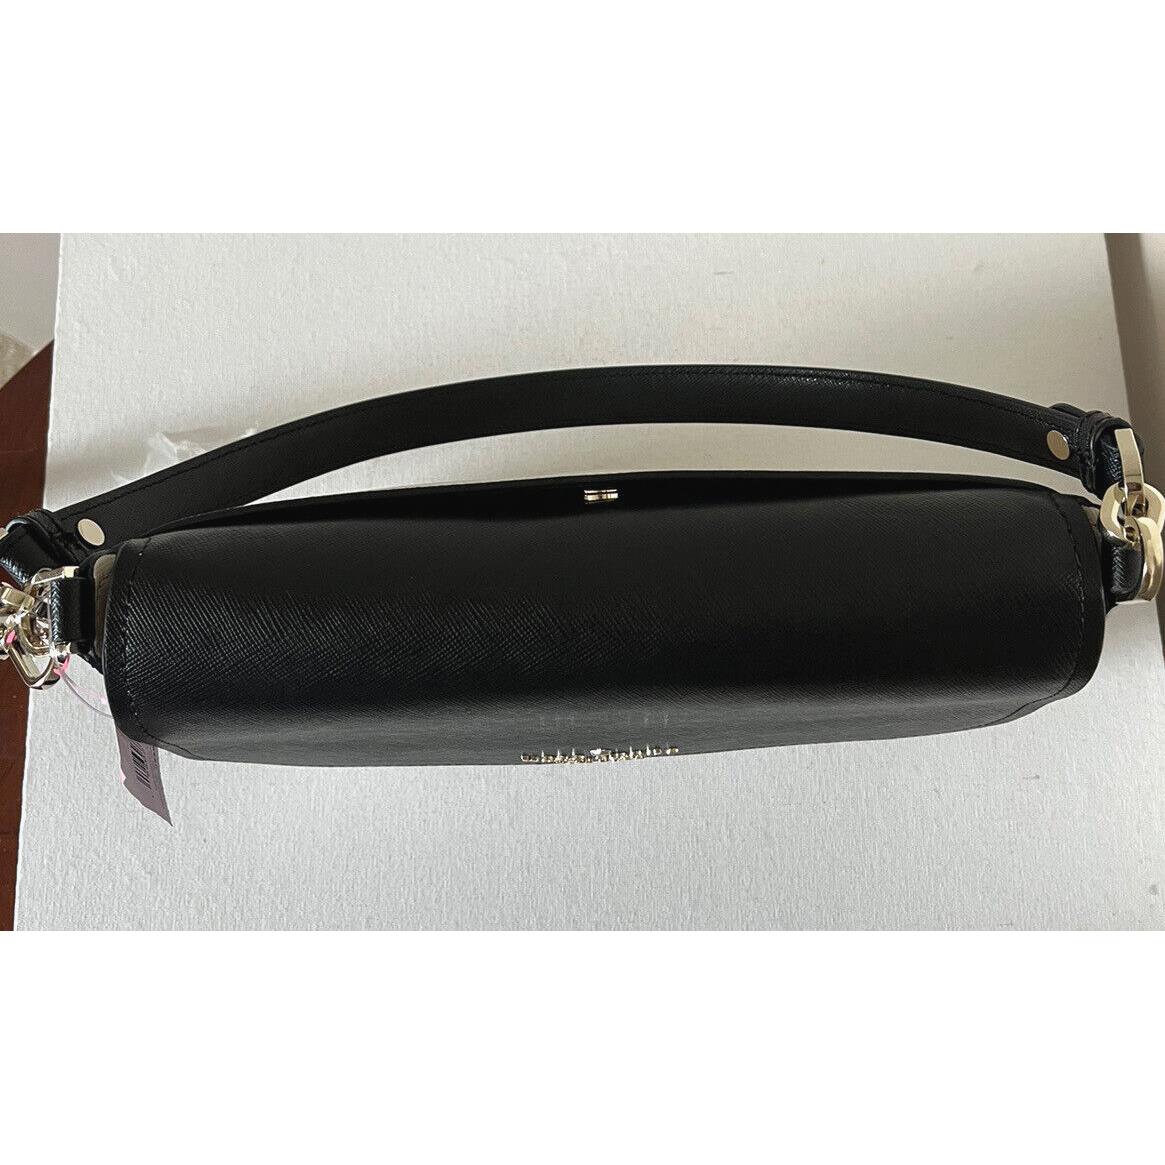 Kate Spade Staci Saffiano Leather Shoulder Bag Black K6042 – LussoCitta